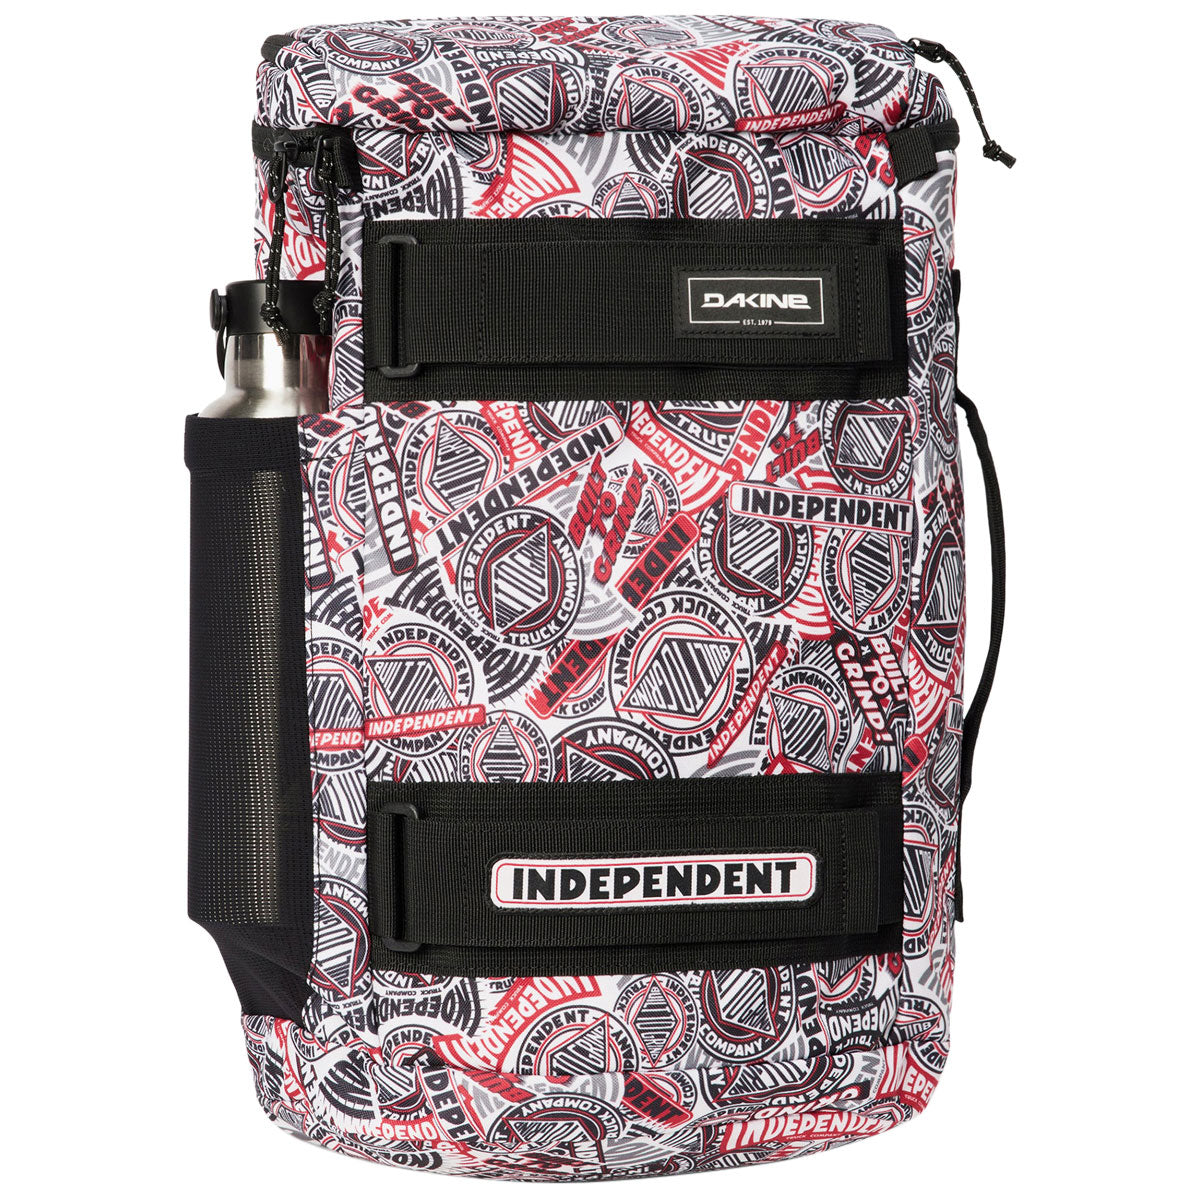 Dakine x Independent Mission Street Pack 25L Backpack - Independent image 2